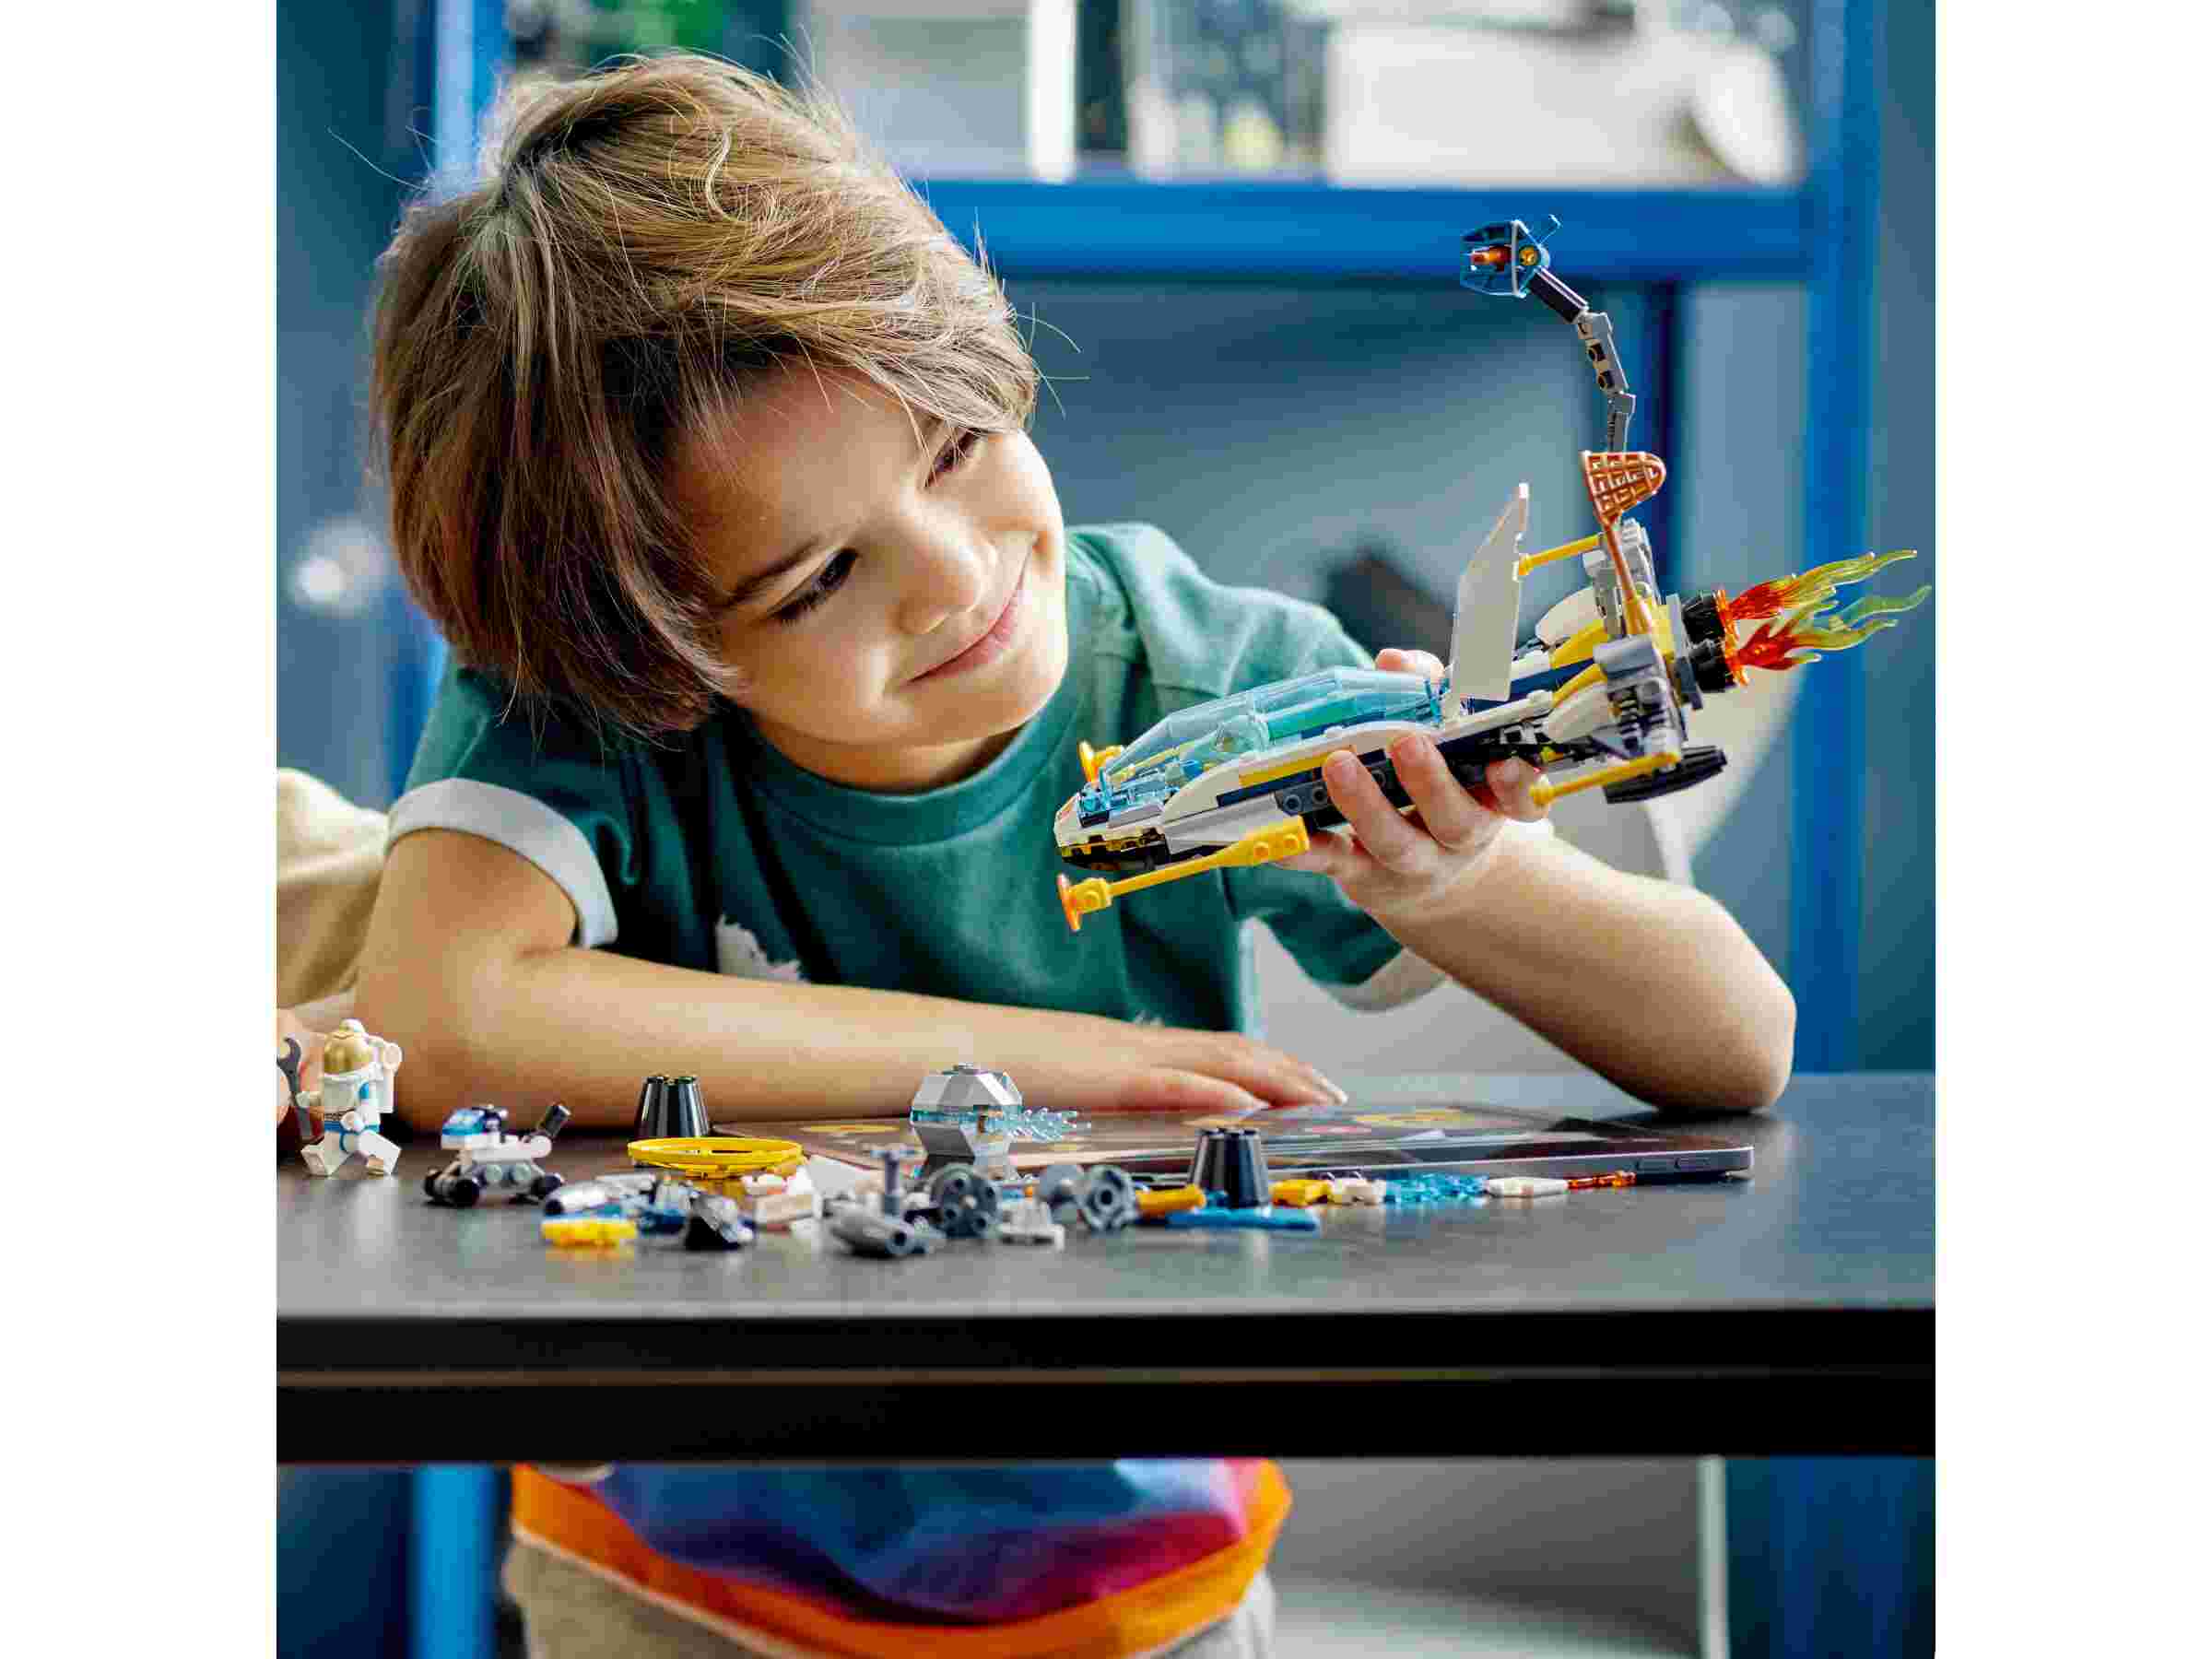 LEGO 60354 City Erkundungsmissionen im Weltraum mit Raumschiff u. 3 Minifiguren